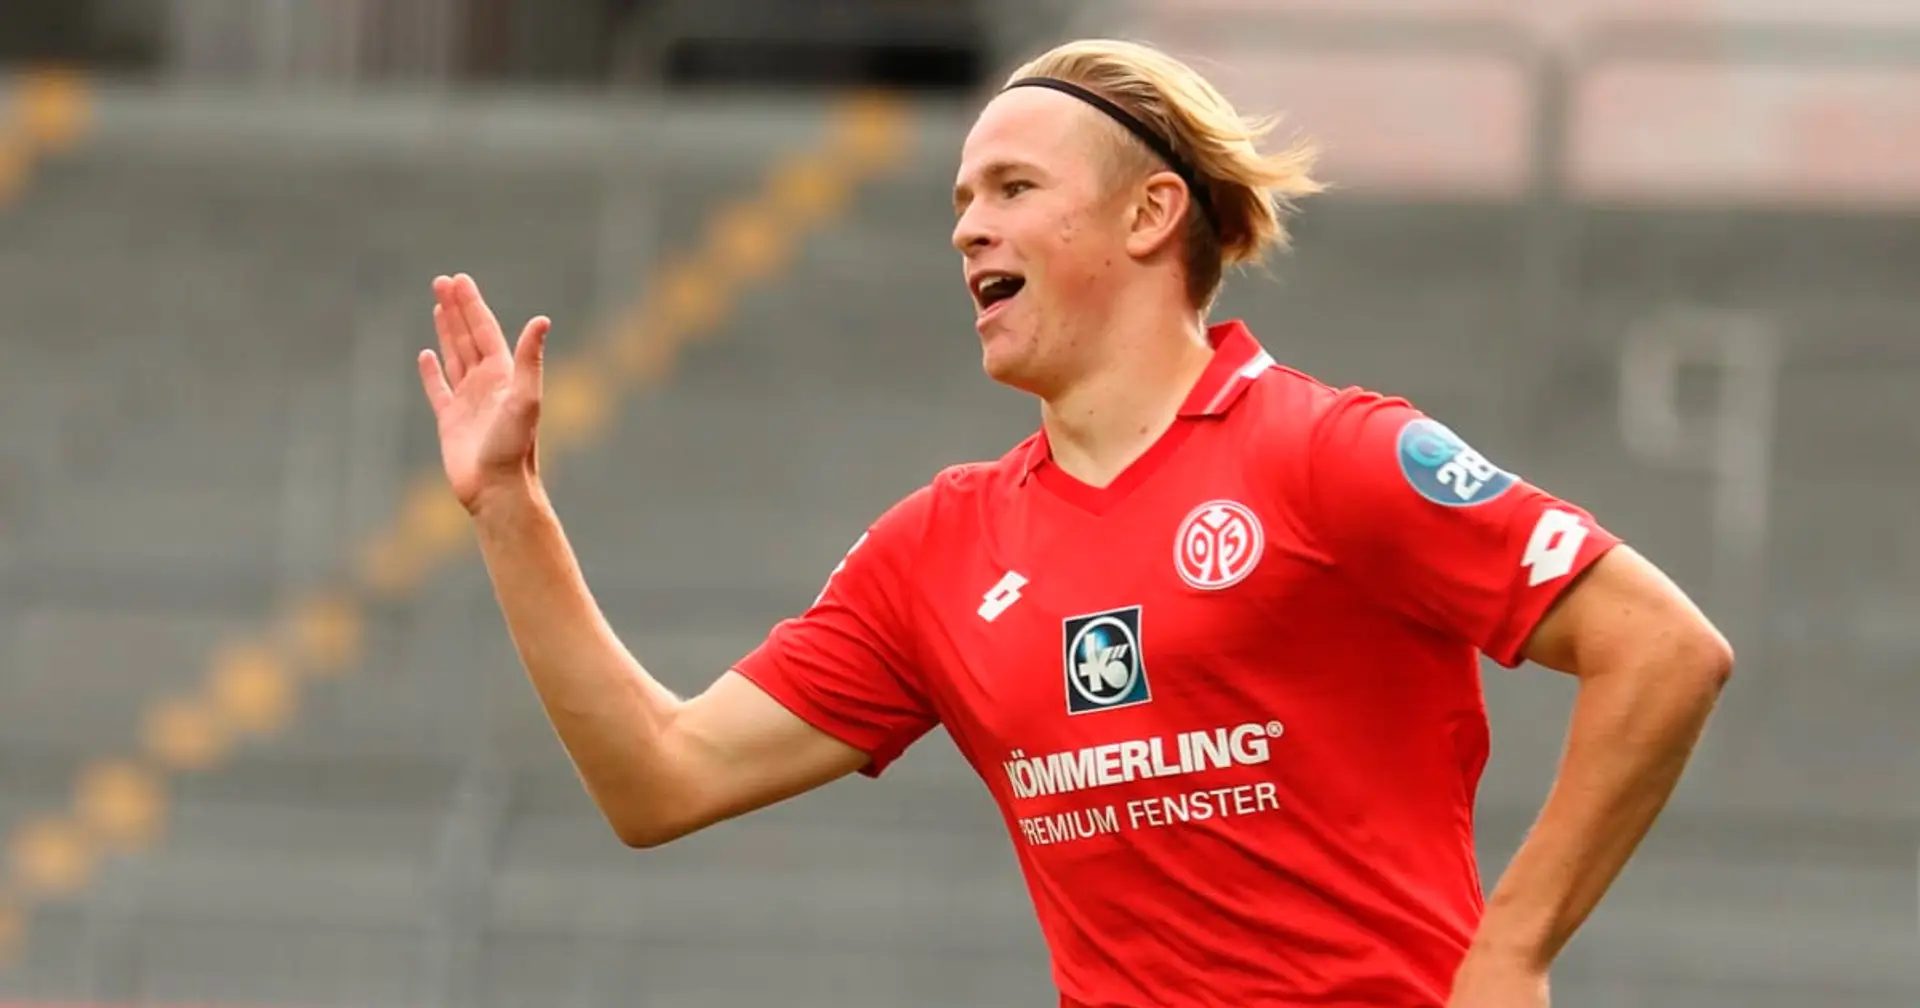 Mainz-Spieler Burkardt: "Dass man aber 5 Tore in einer Halbzeit bekommt, ist sehr, sehr bitter"